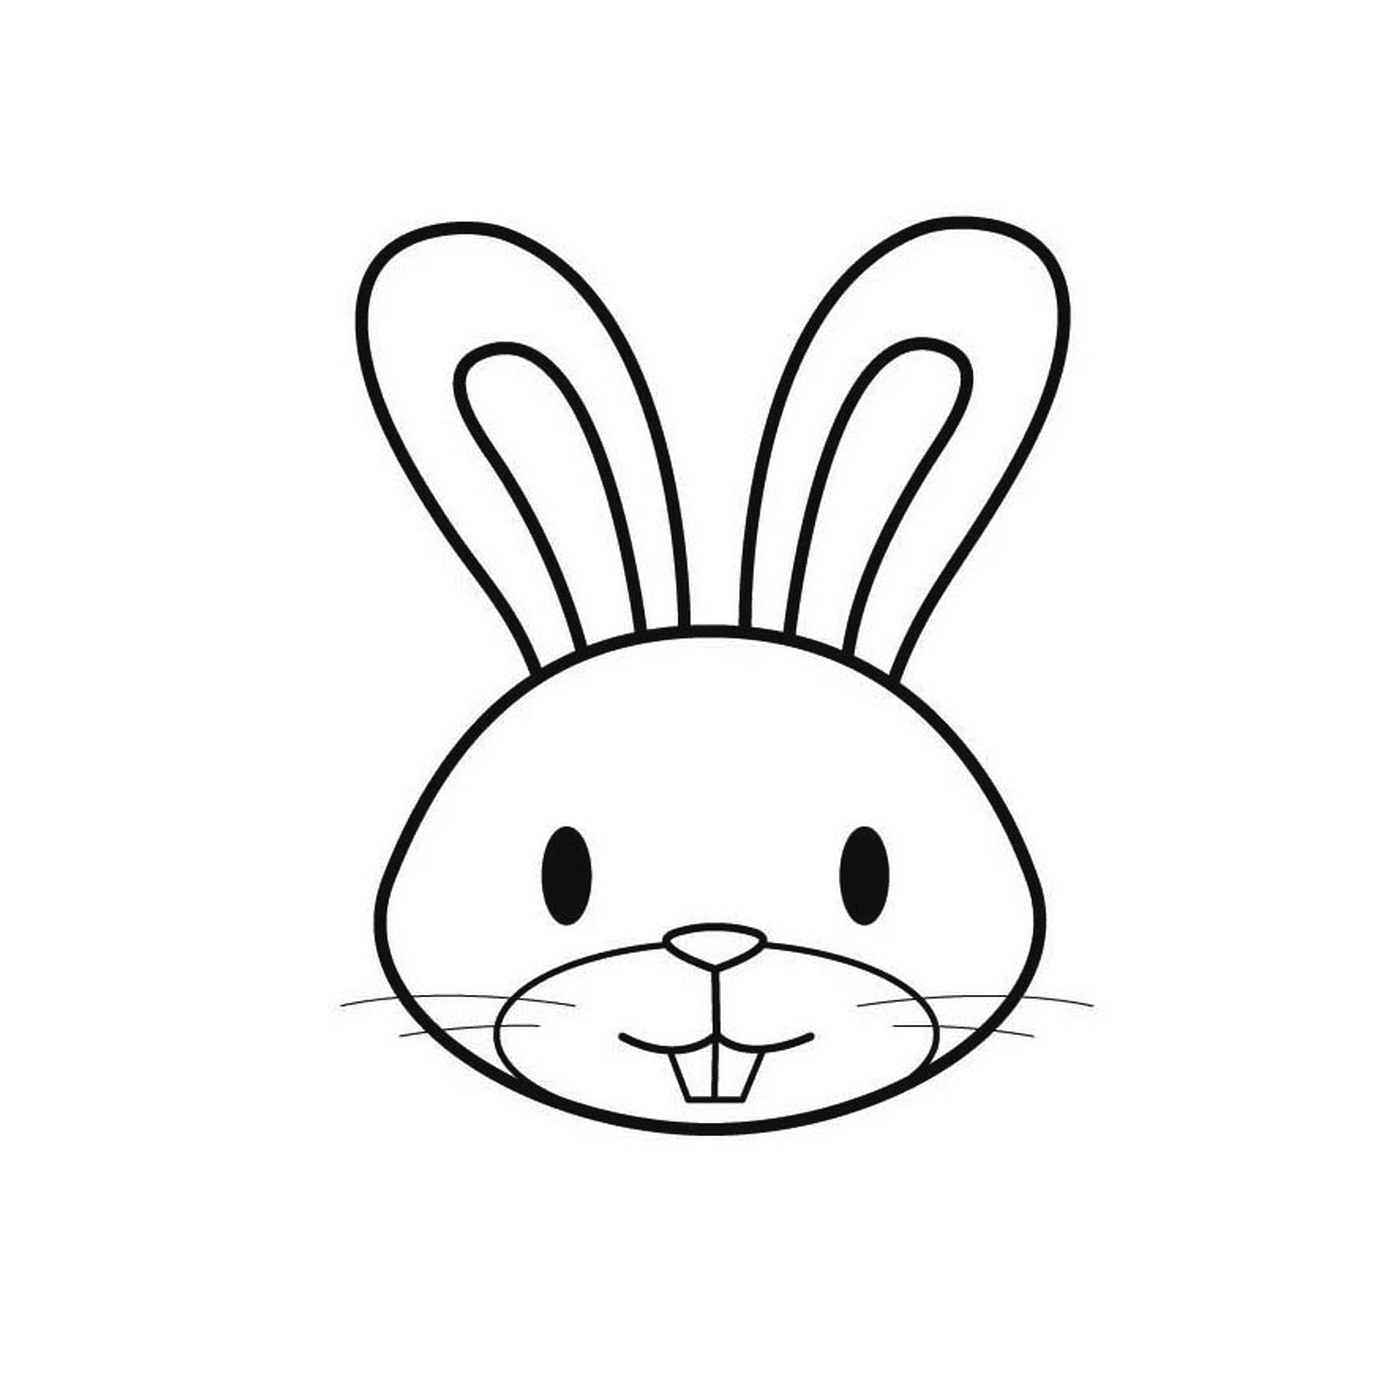  Das Gesicht eines Kaninchens 